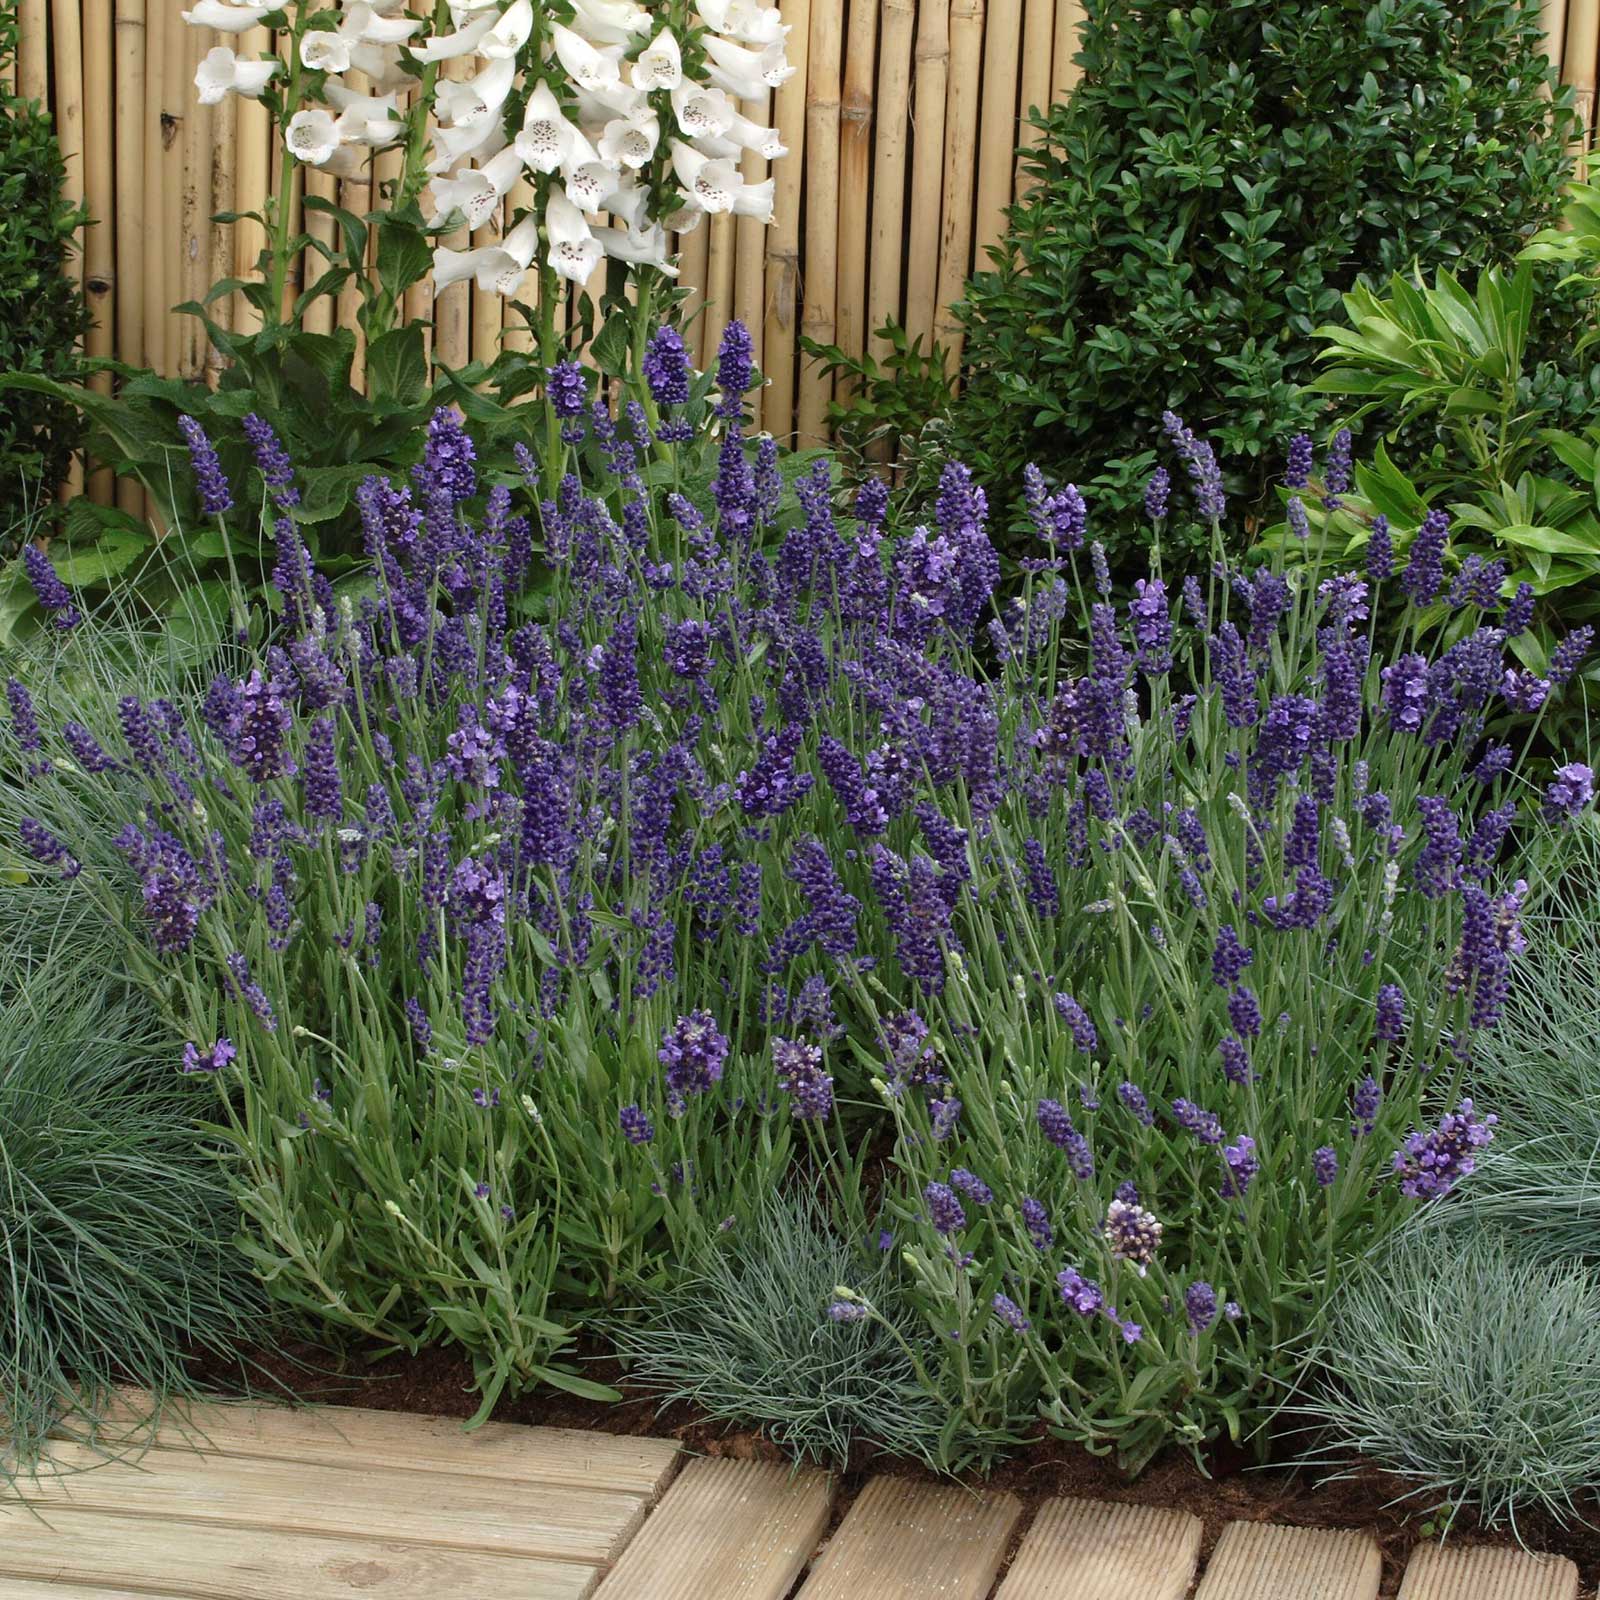 Lavender Edible Garden at